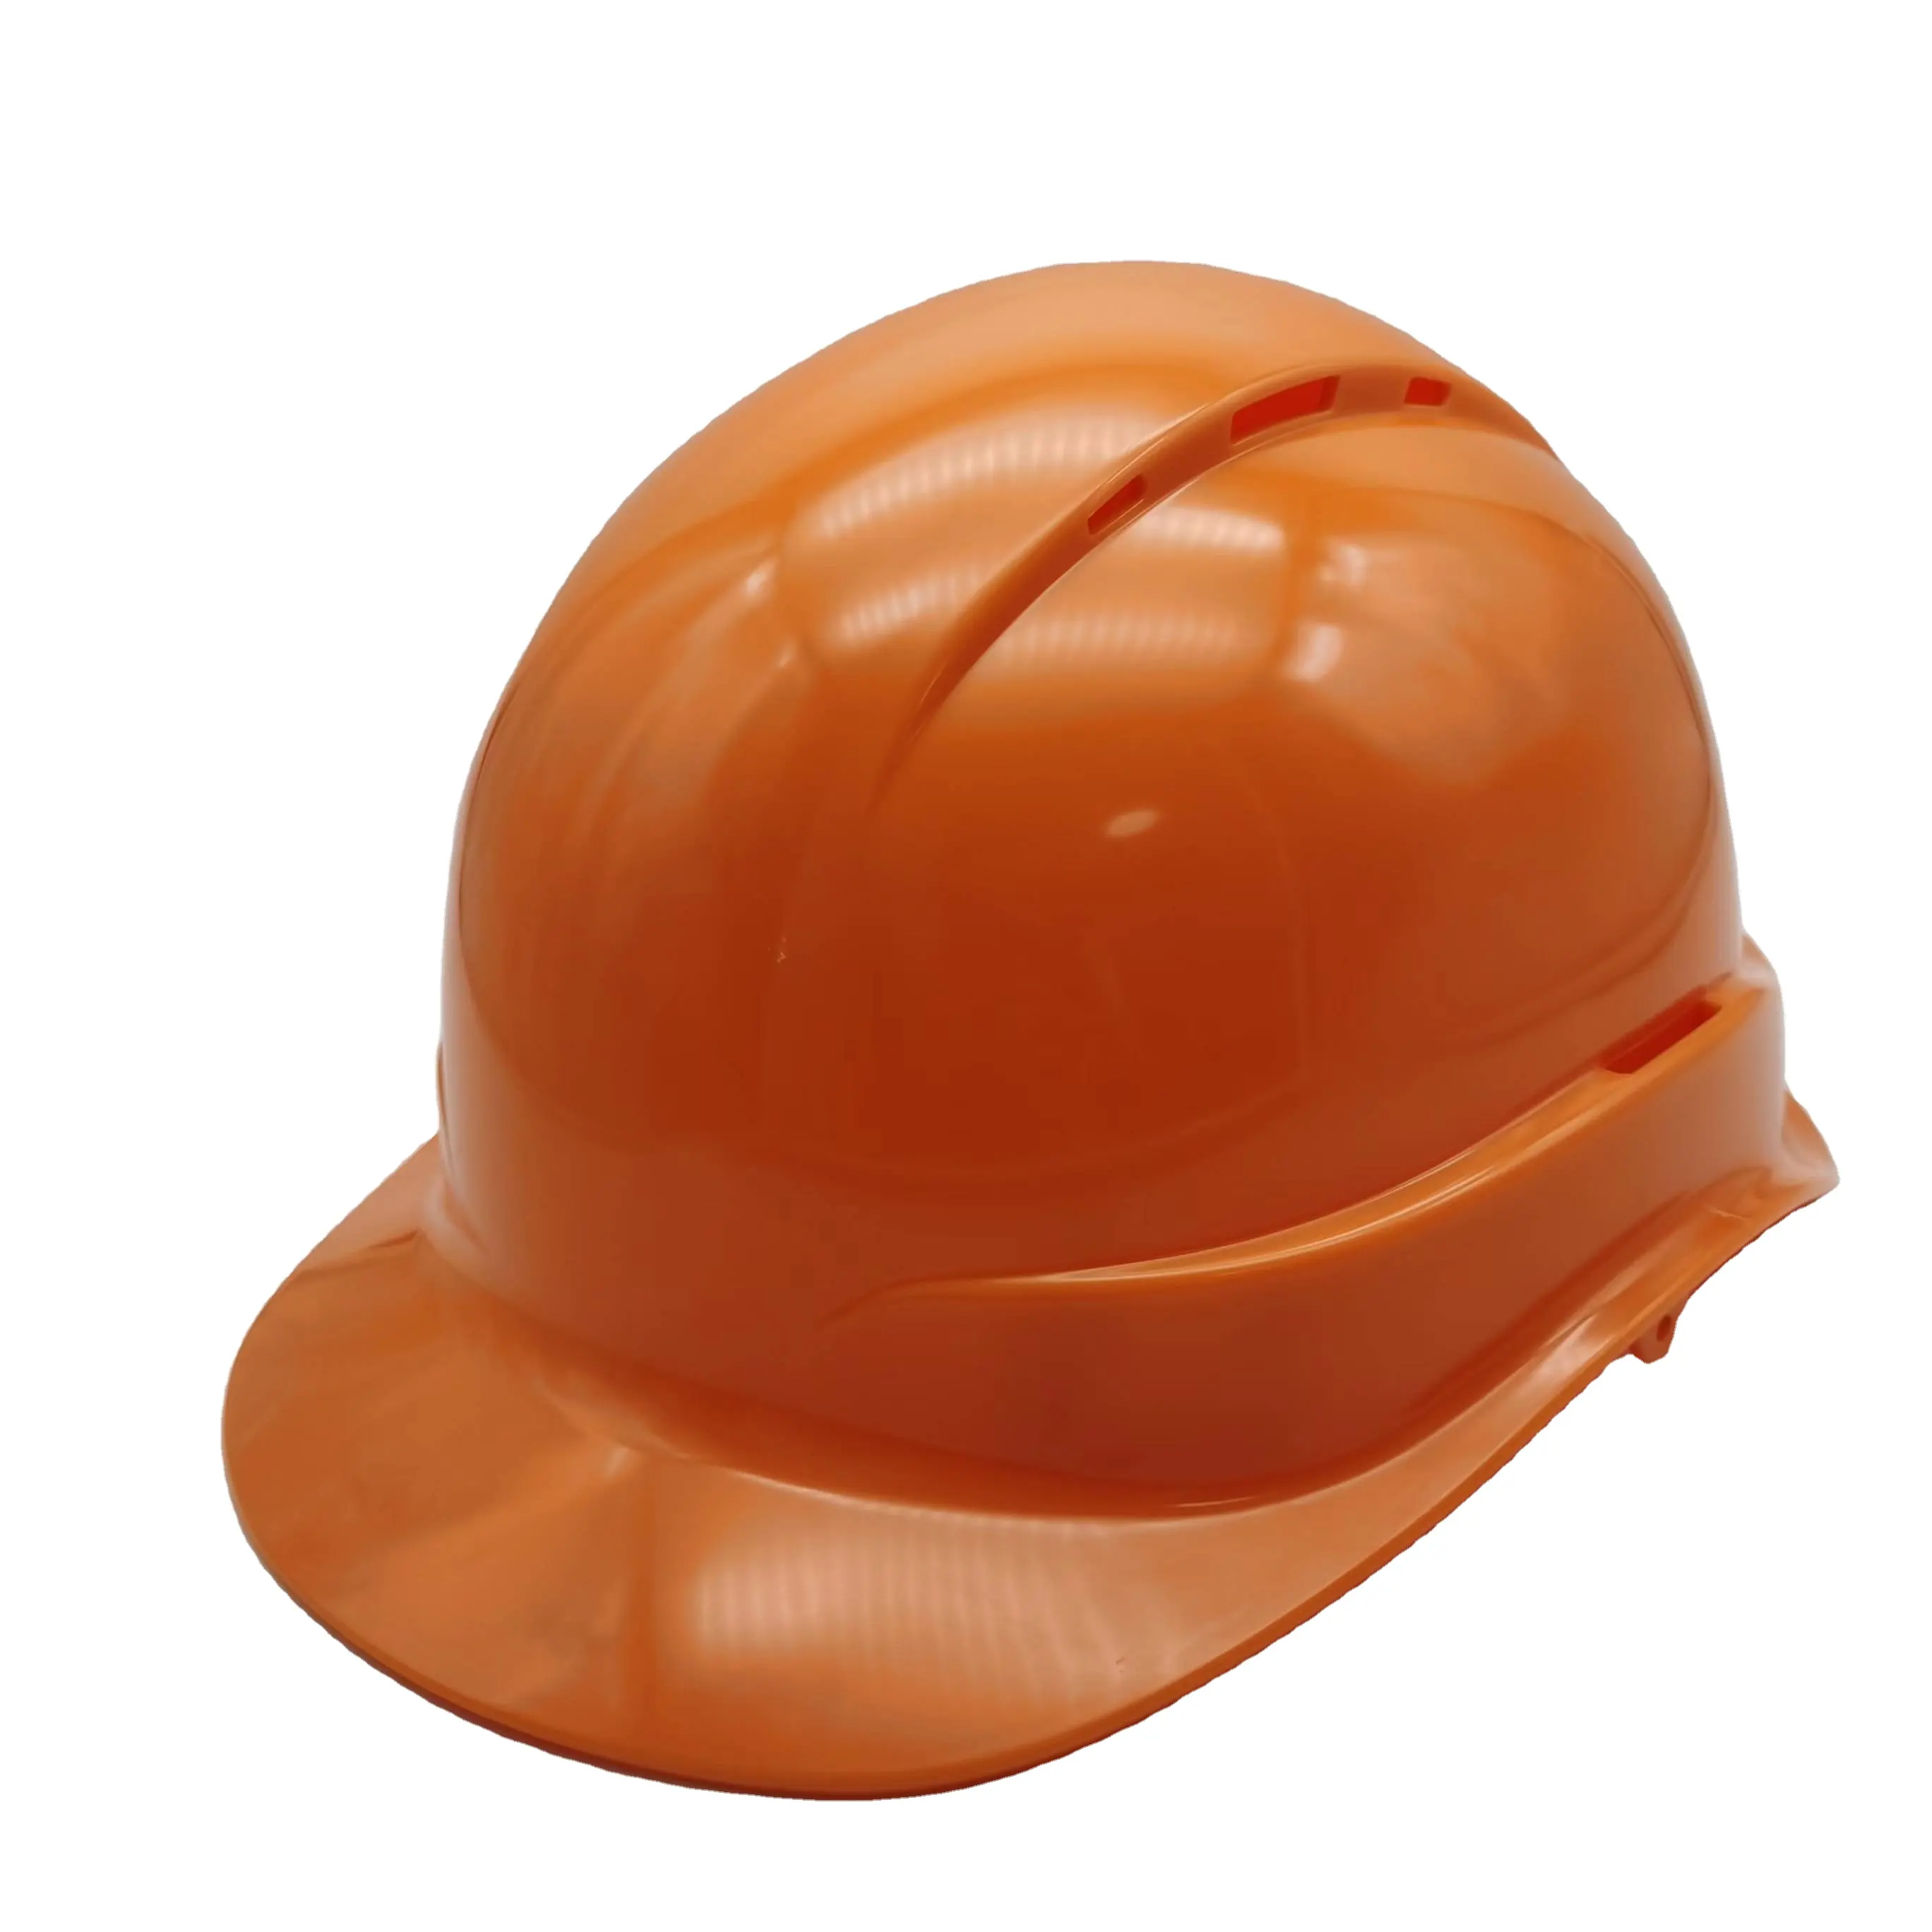 फैक्टरी निर्माण उद्योग के लिए खुद की शैली सस्ते सुरक्षा हेलमेट सुरक्षात्मक उपकरण कठिन टोपी